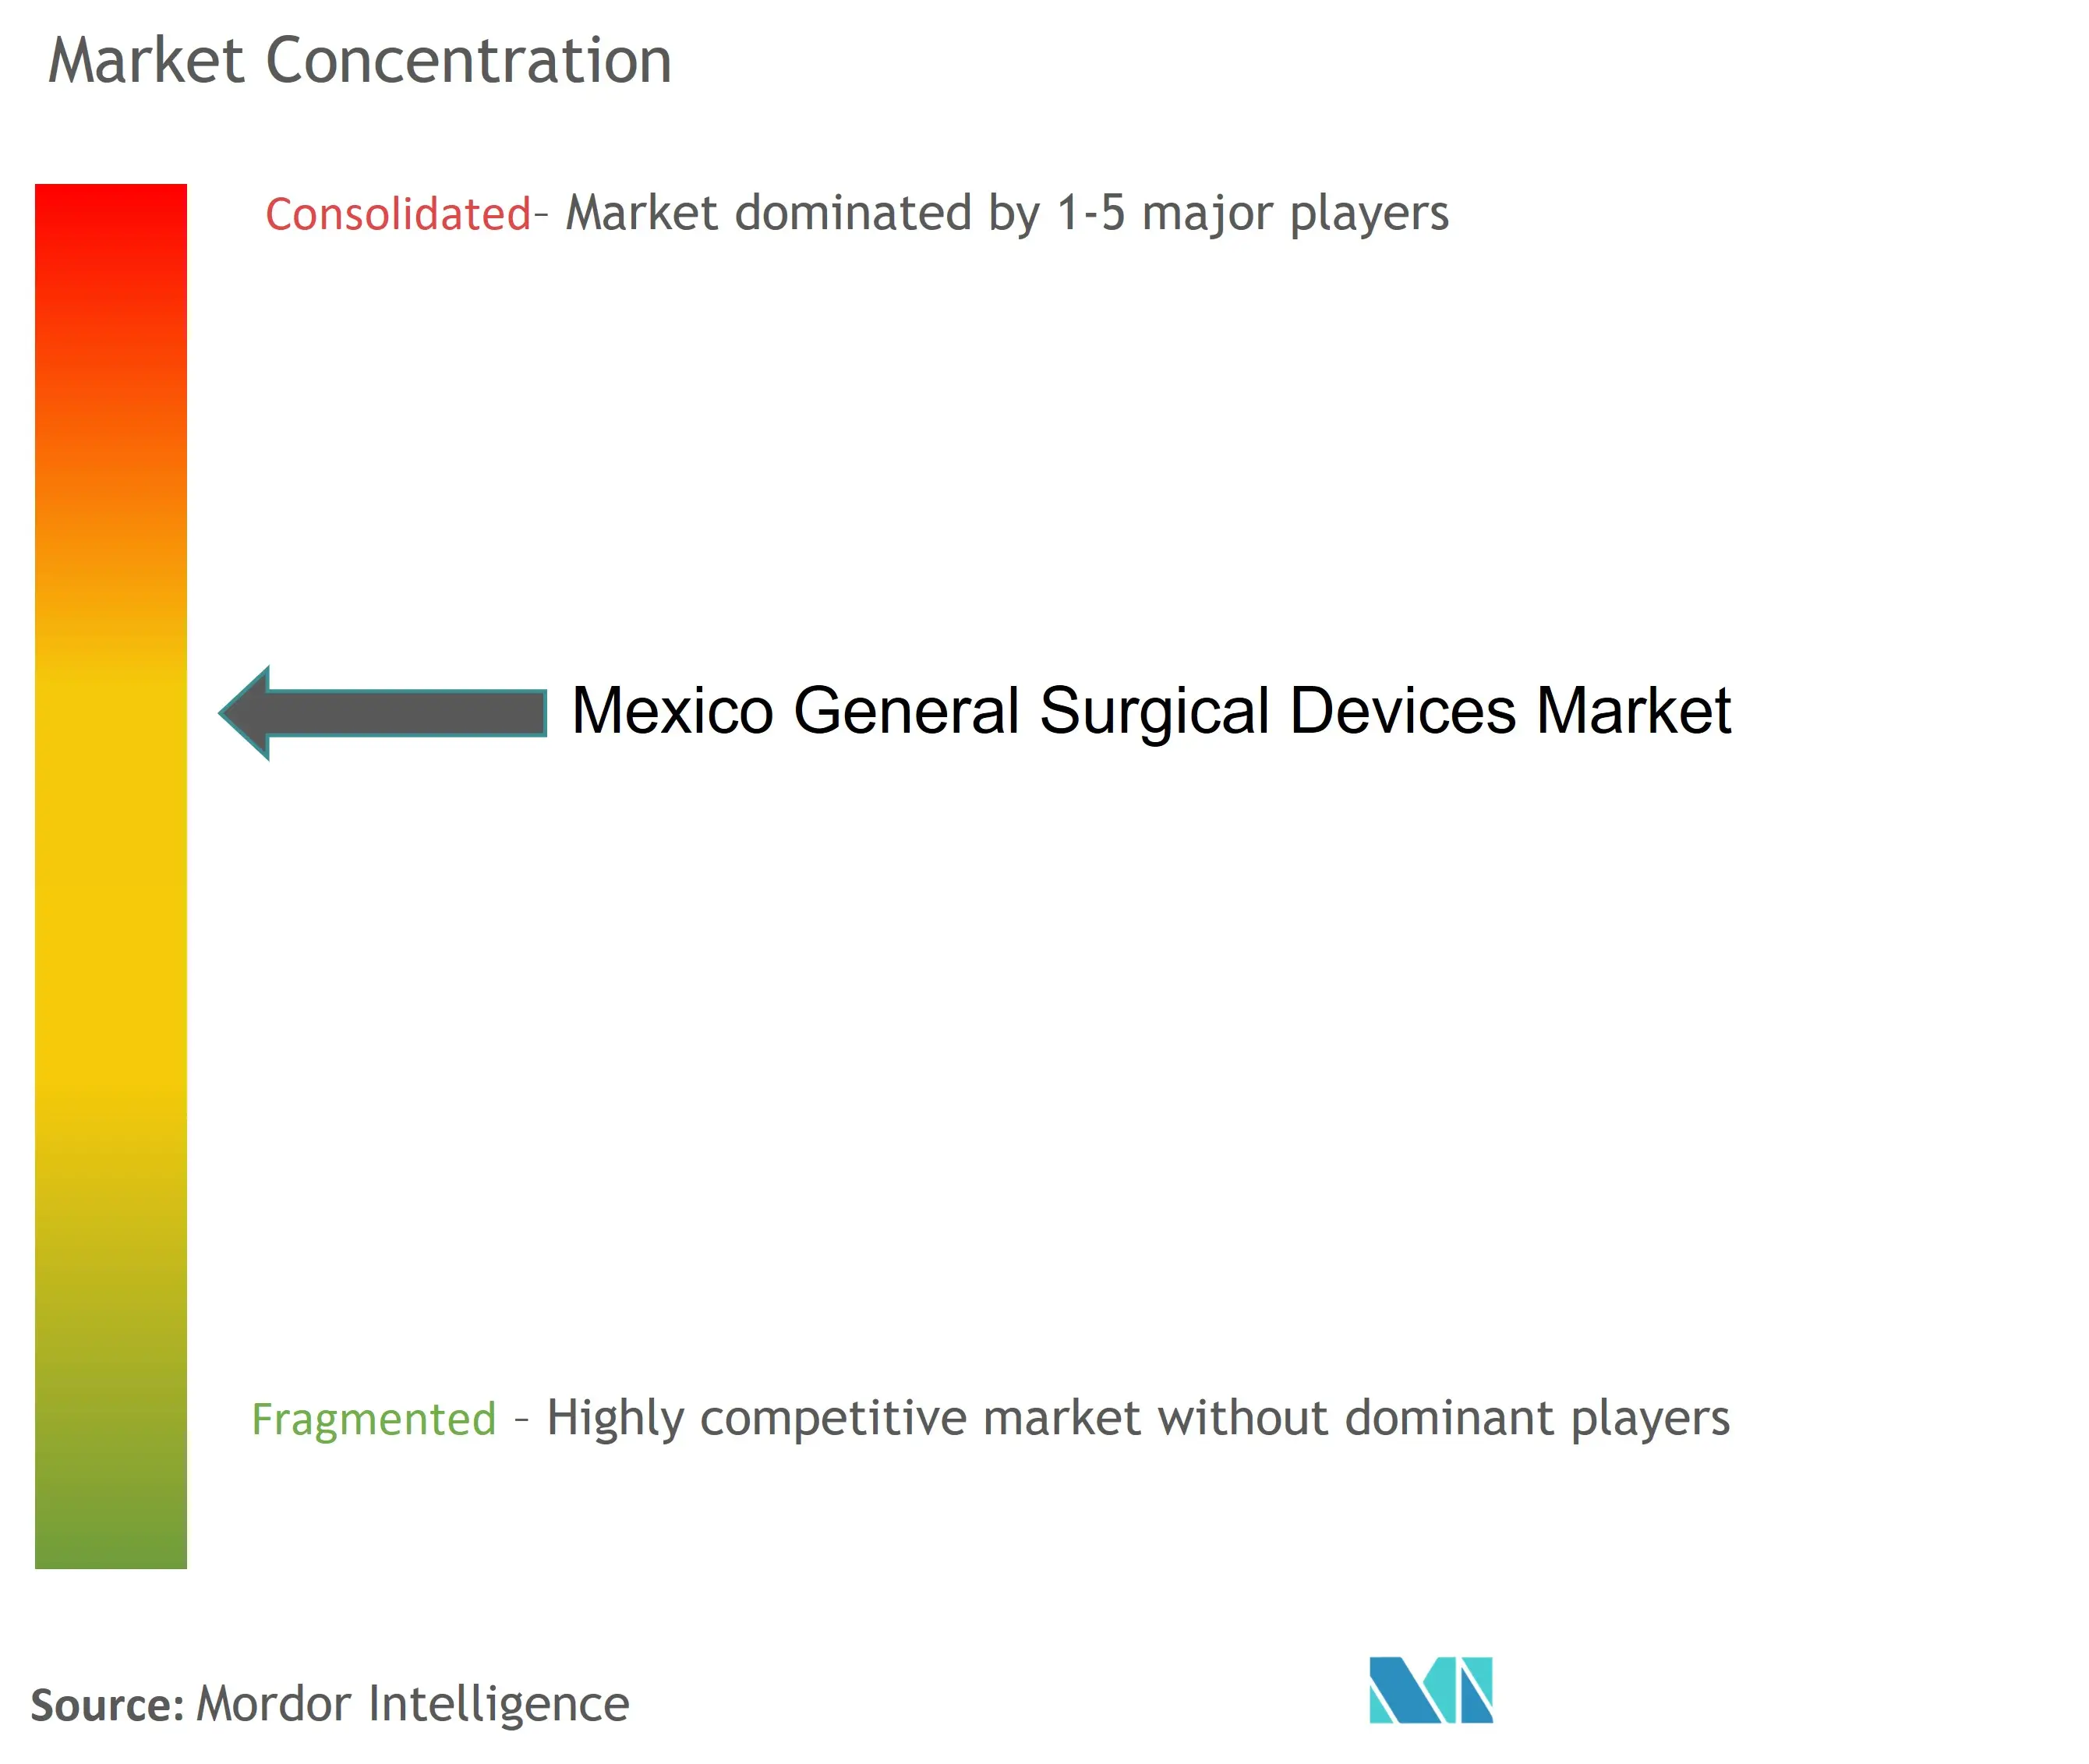 Концентрация рынка хирургических устройств общего назначения в Мексике